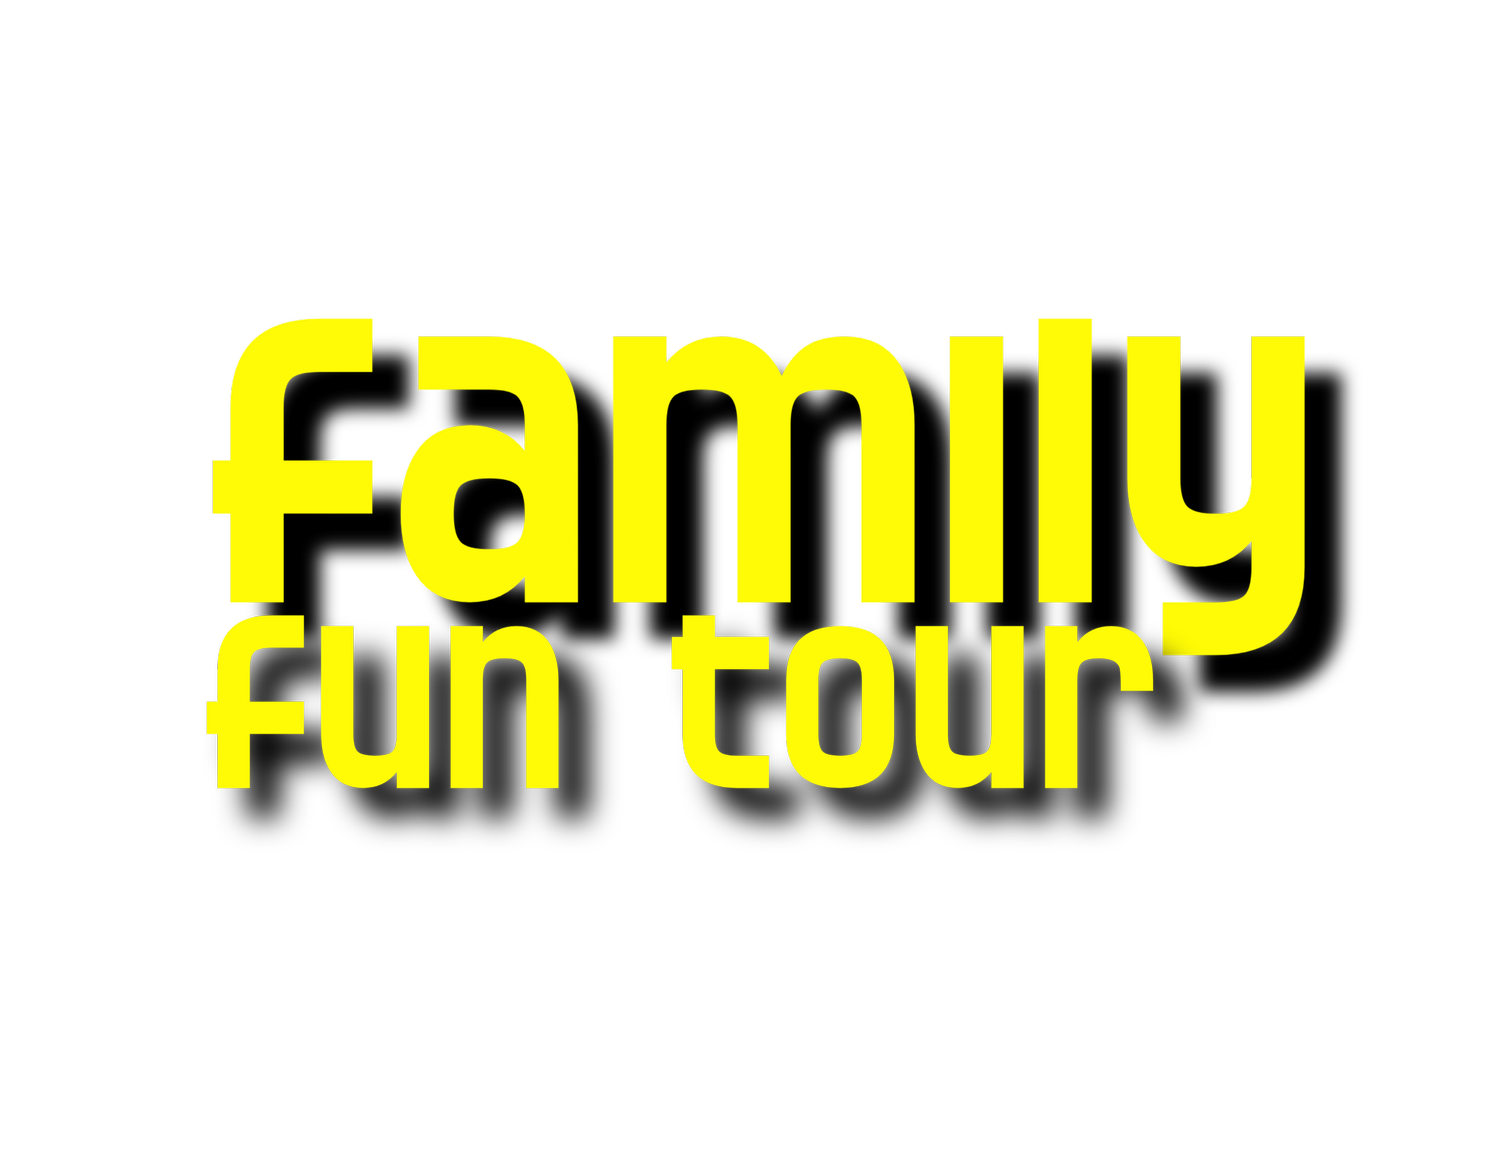 The Family Fun Tour